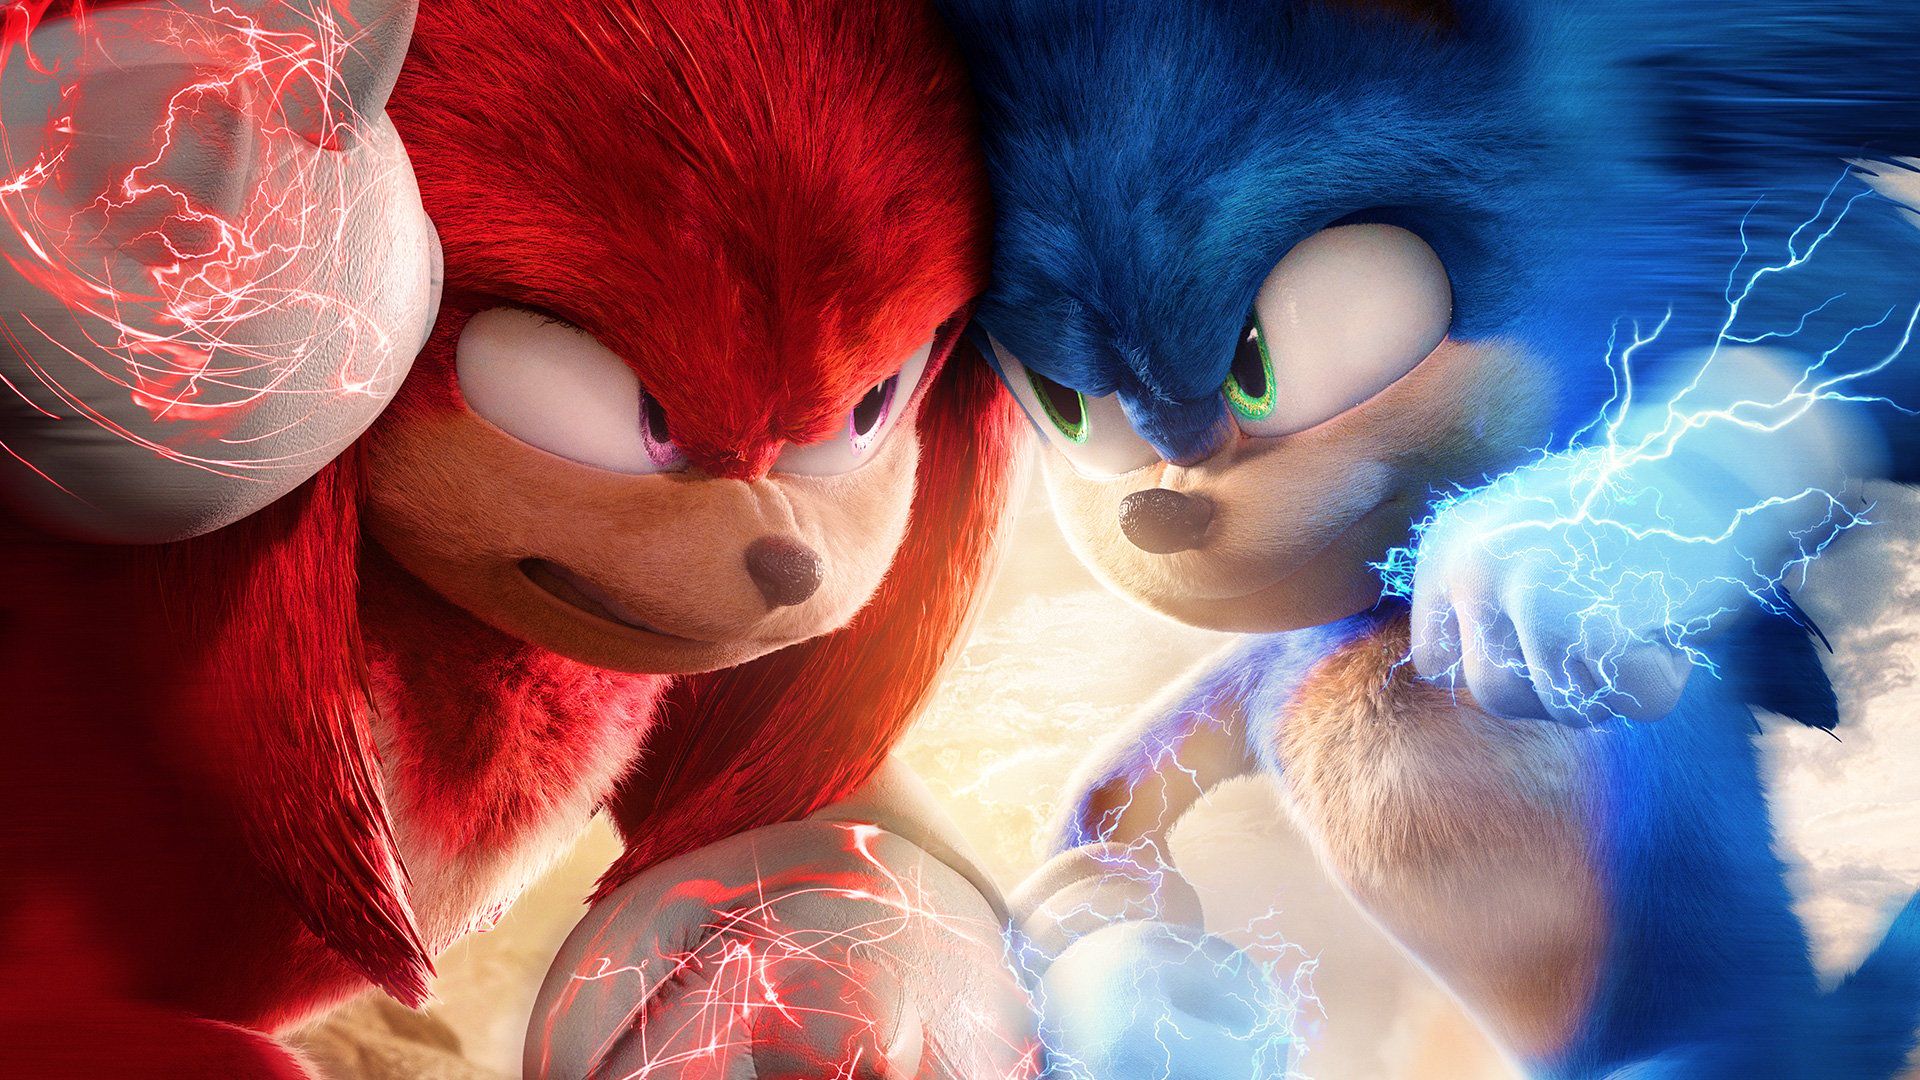 Sonic the Hedgehog 2 trở thành bộ phim chuyển thể từ game có doanh thu cao nhất lịch sử Mỹ